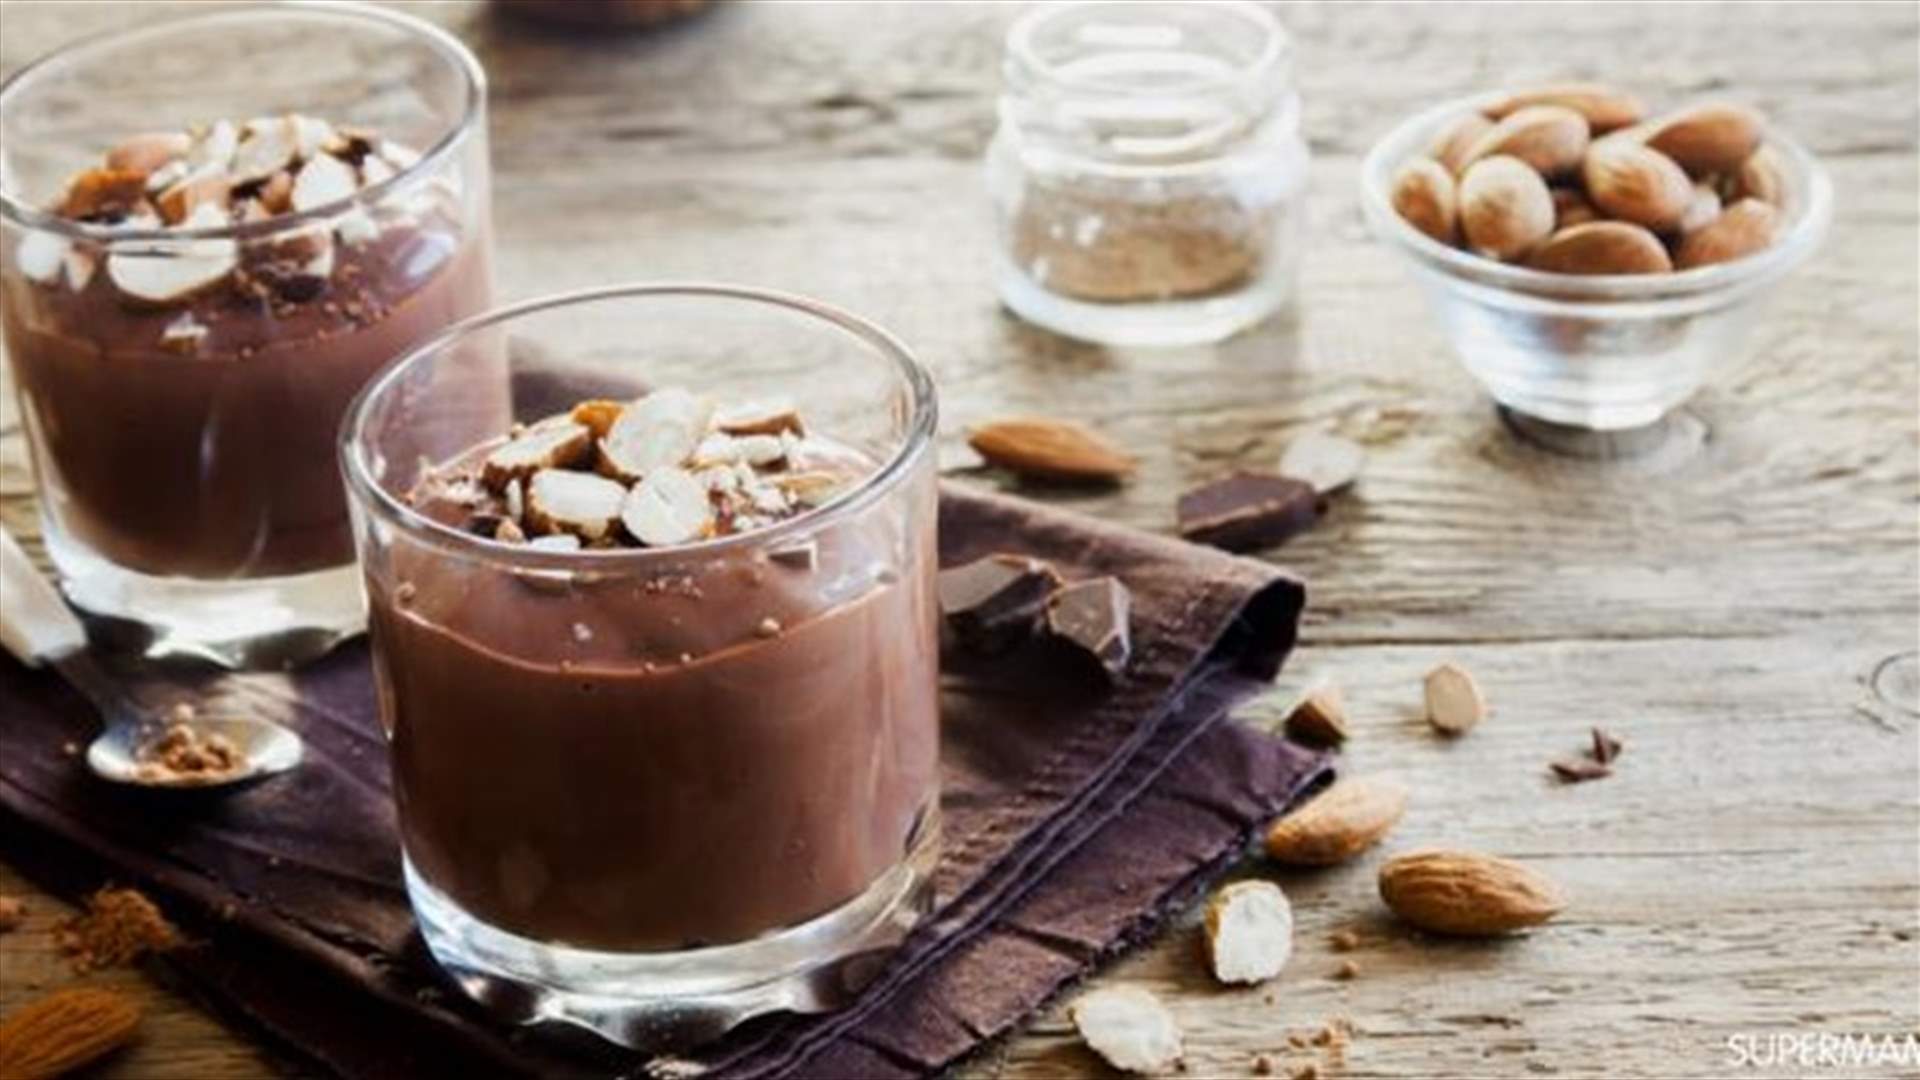 طريقة سهلة لتحضير مهلبية الشوفان بالشوكولاتة المفيدة